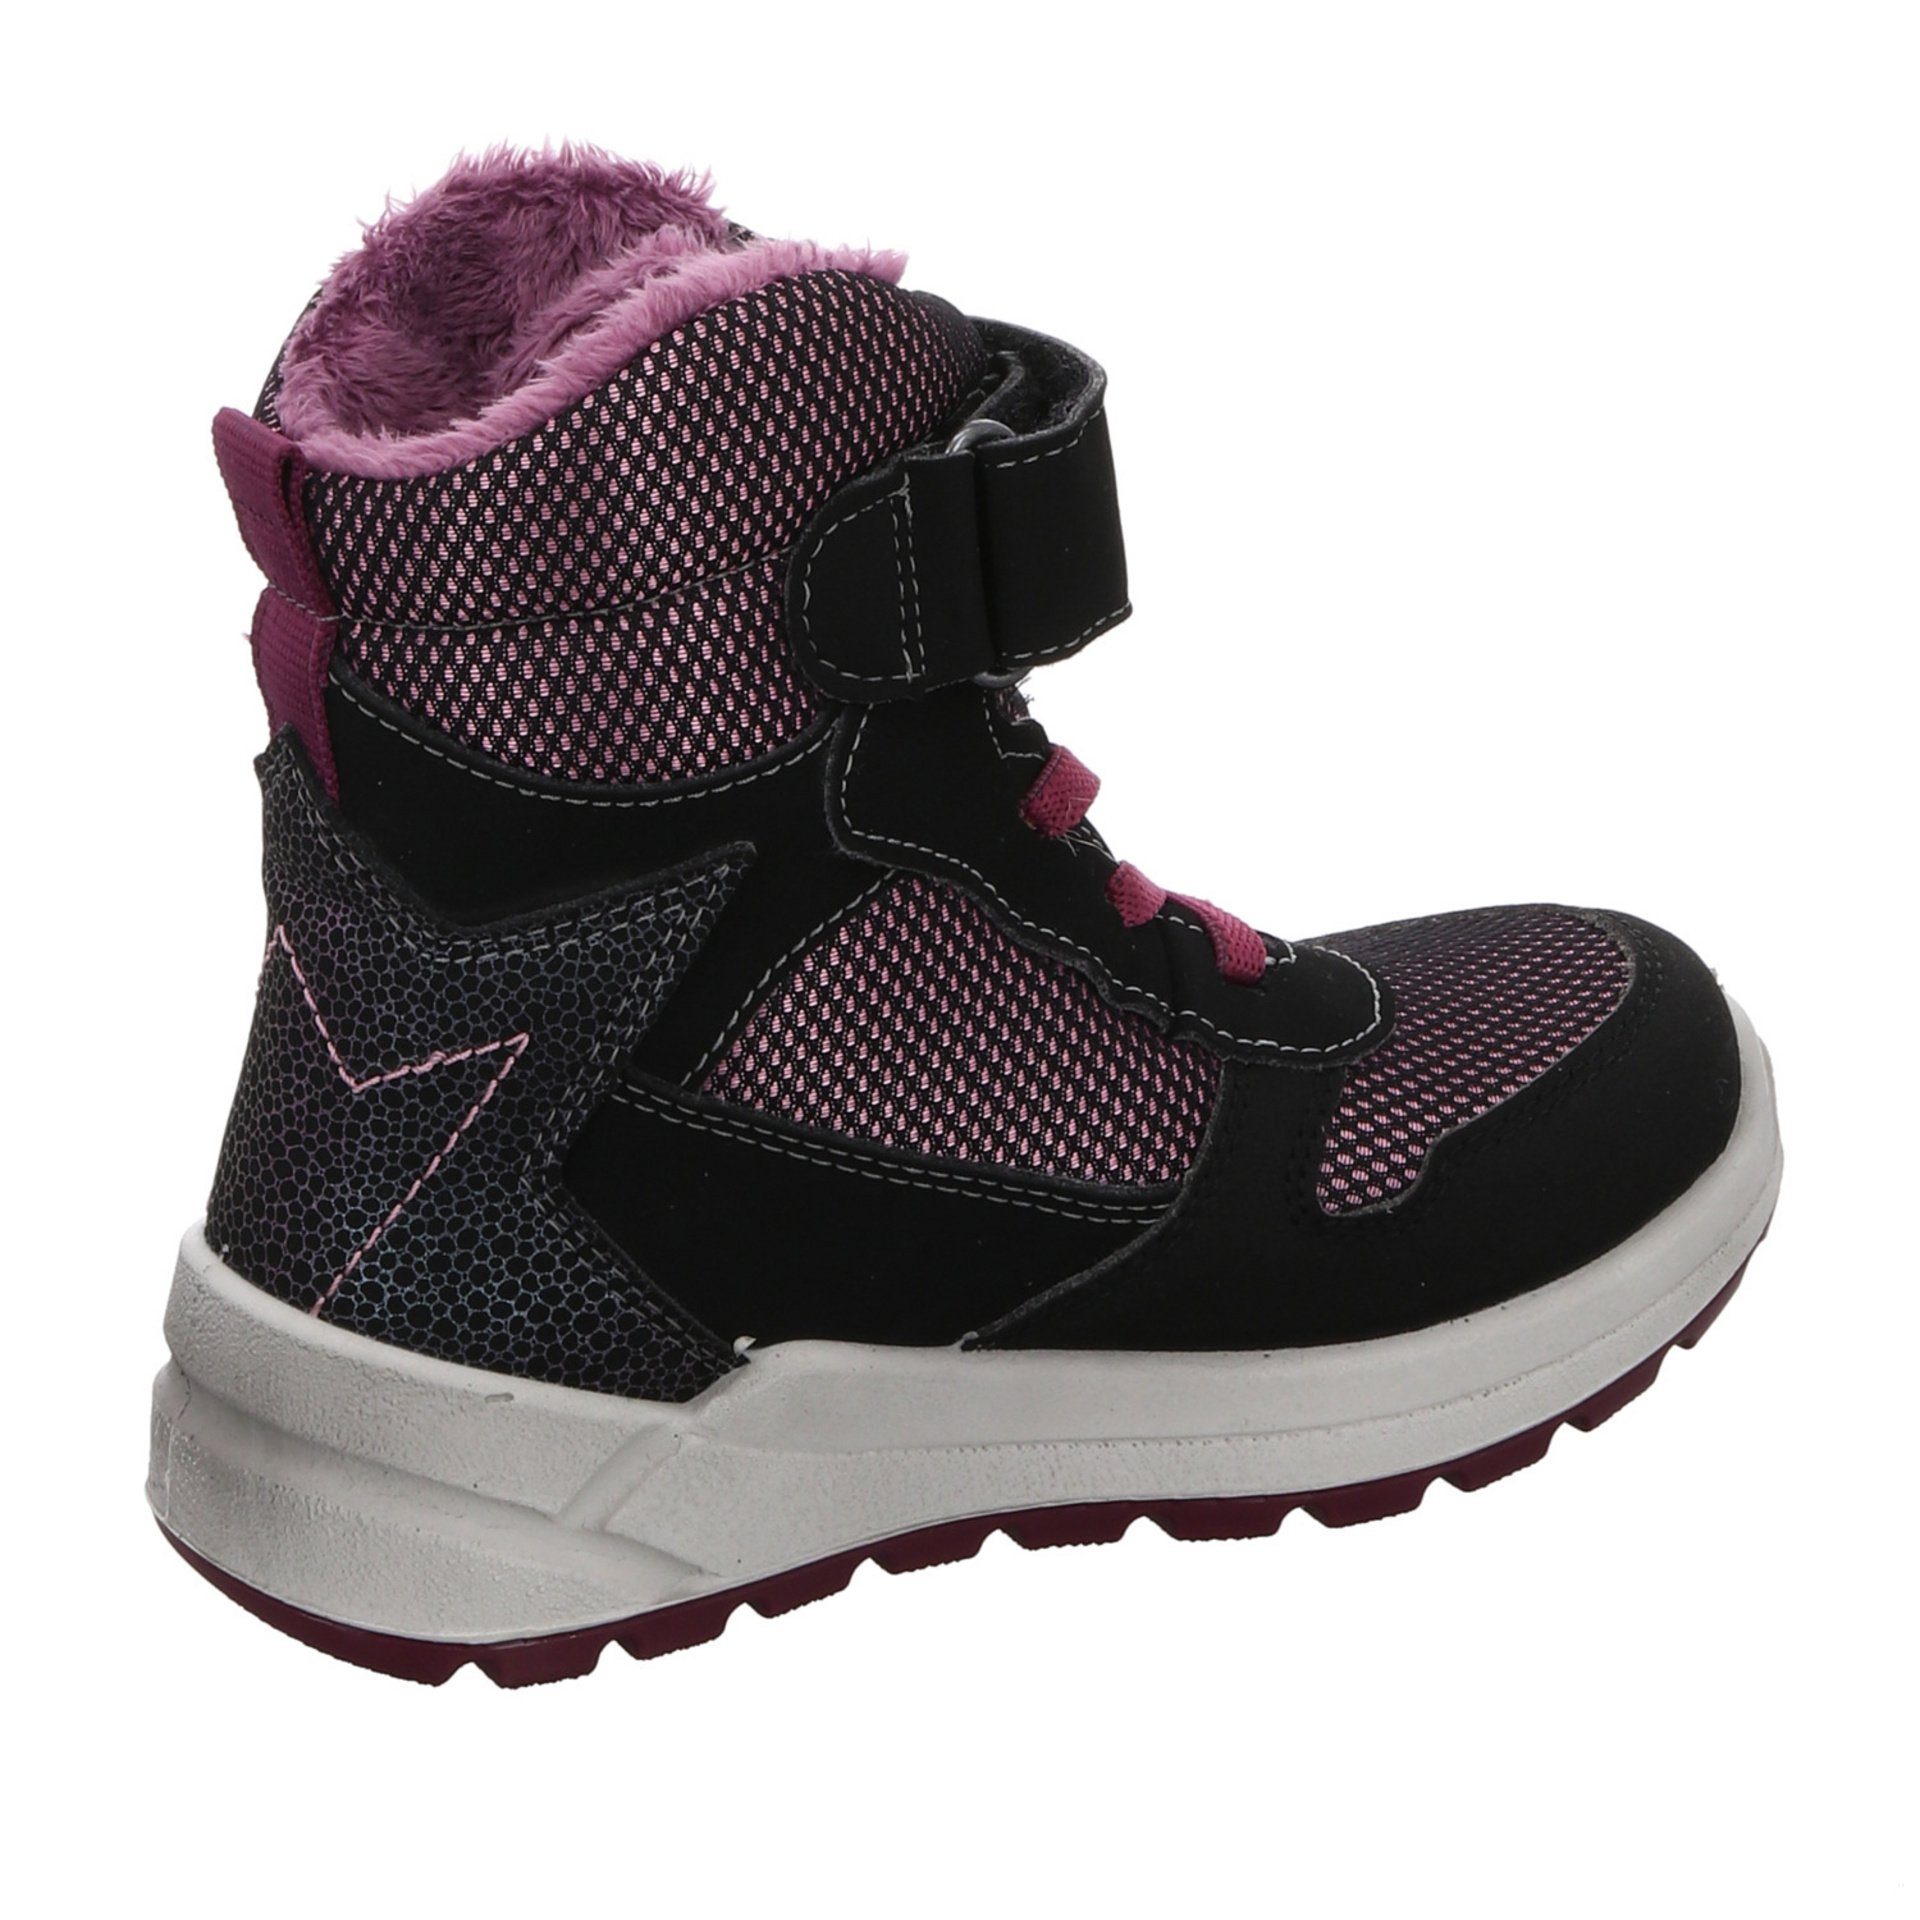 Ricosta Schuhe Boots Kinderschuhe Mädchen Stiefelette Stiefel Synthetikkombination Gela schwarz